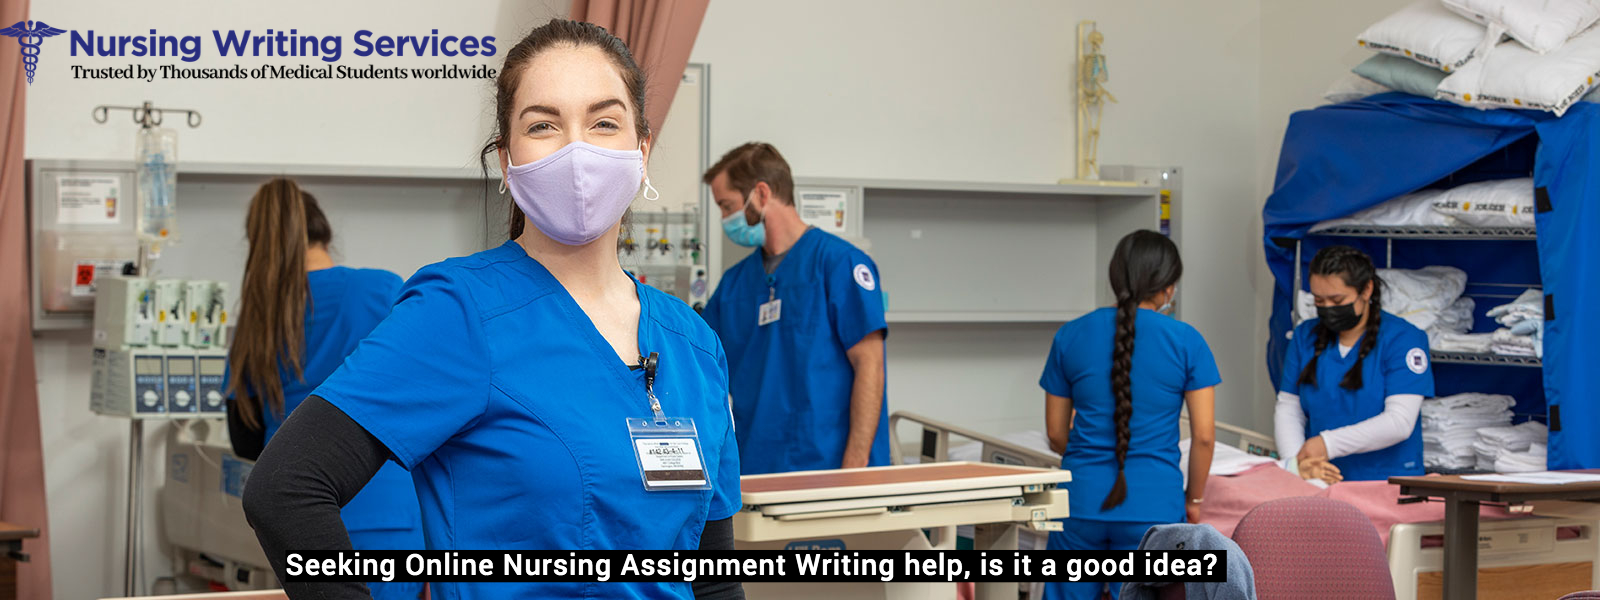 Seeking Online Nursing Assignment Writing help, is it a good idea?